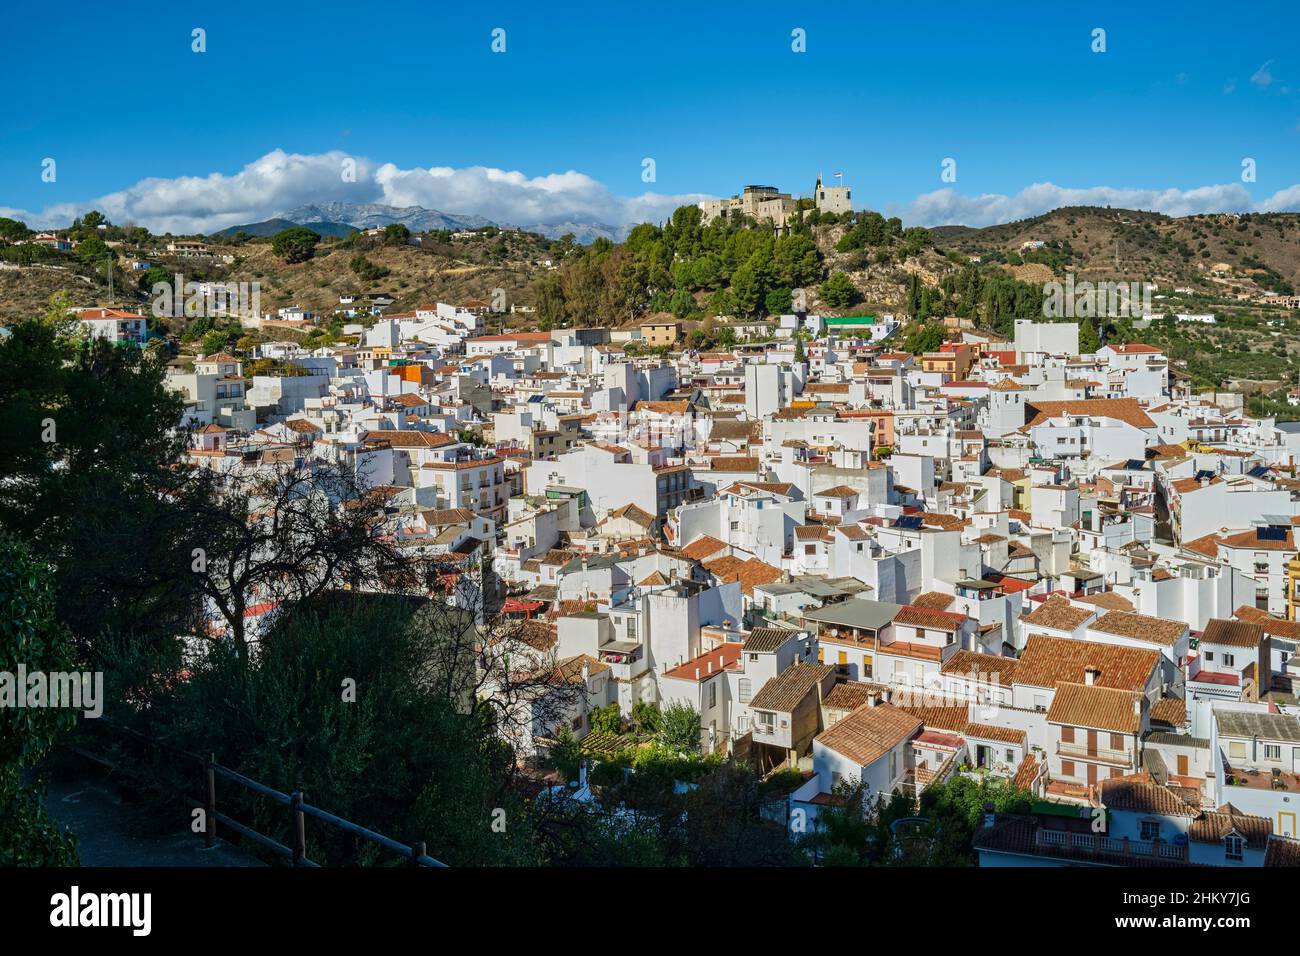 Vista general panorámica del pueblo blanco de Monda. Parque Nacional Sierra de las Nieves. Málaga provincia Costa del Sol. Andalucía Sur de España, EUR Foto de stock